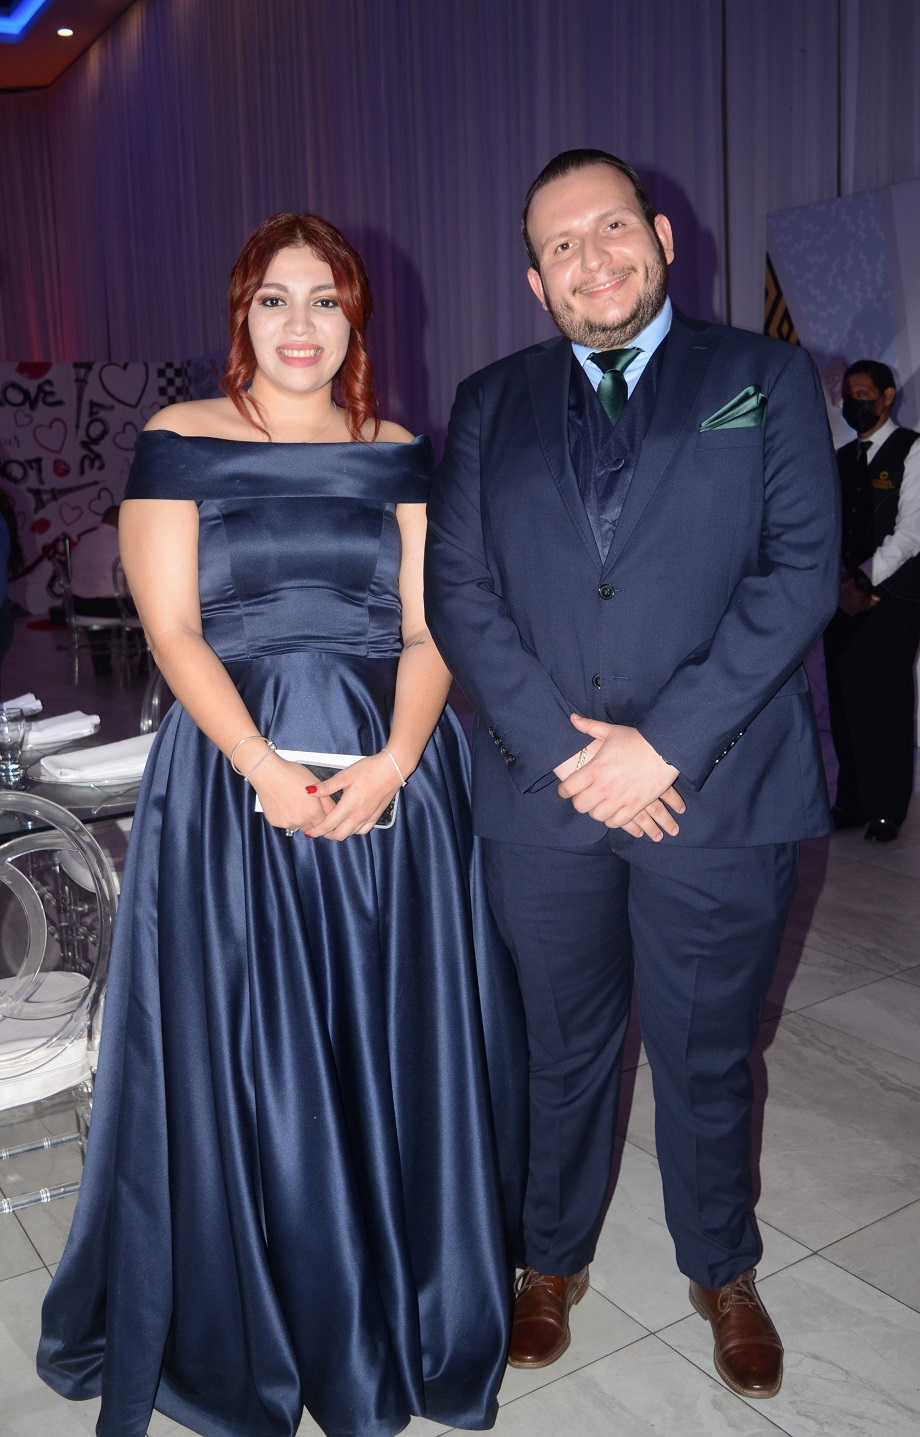 La boda de Joseline Milla y Alejandro Muñoz: un enlace con estilo y personalidad